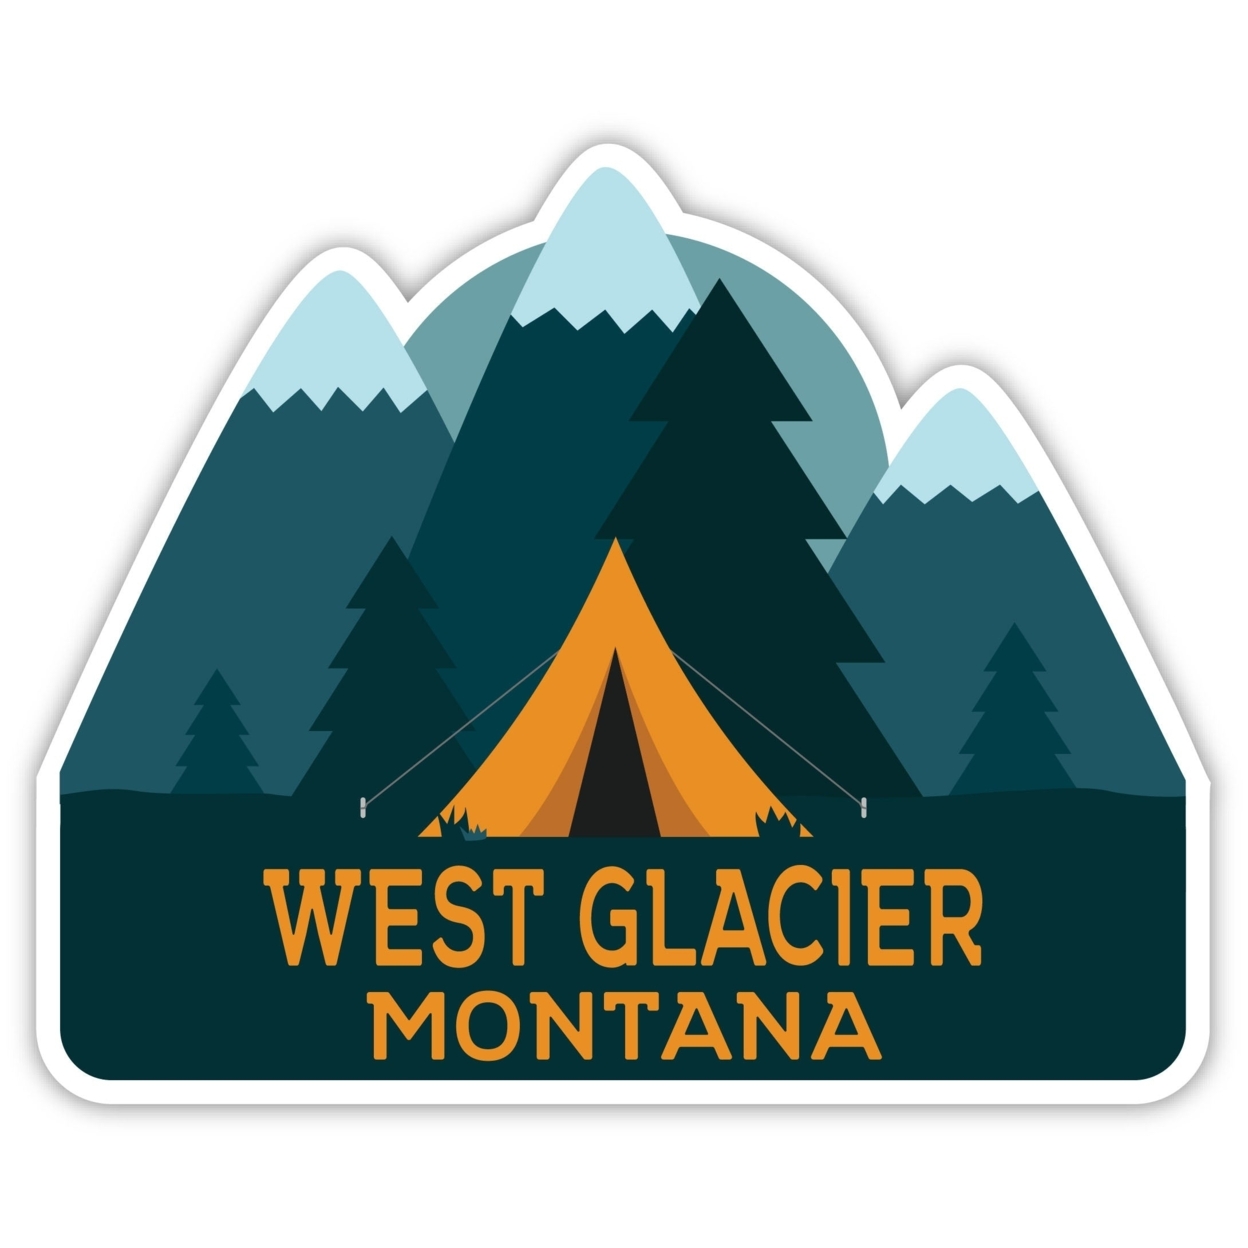 West Glacier Montana Souvenir Decorative Stickers (Choose Theme And Size) - Single Unit, 4-Inch, Tent